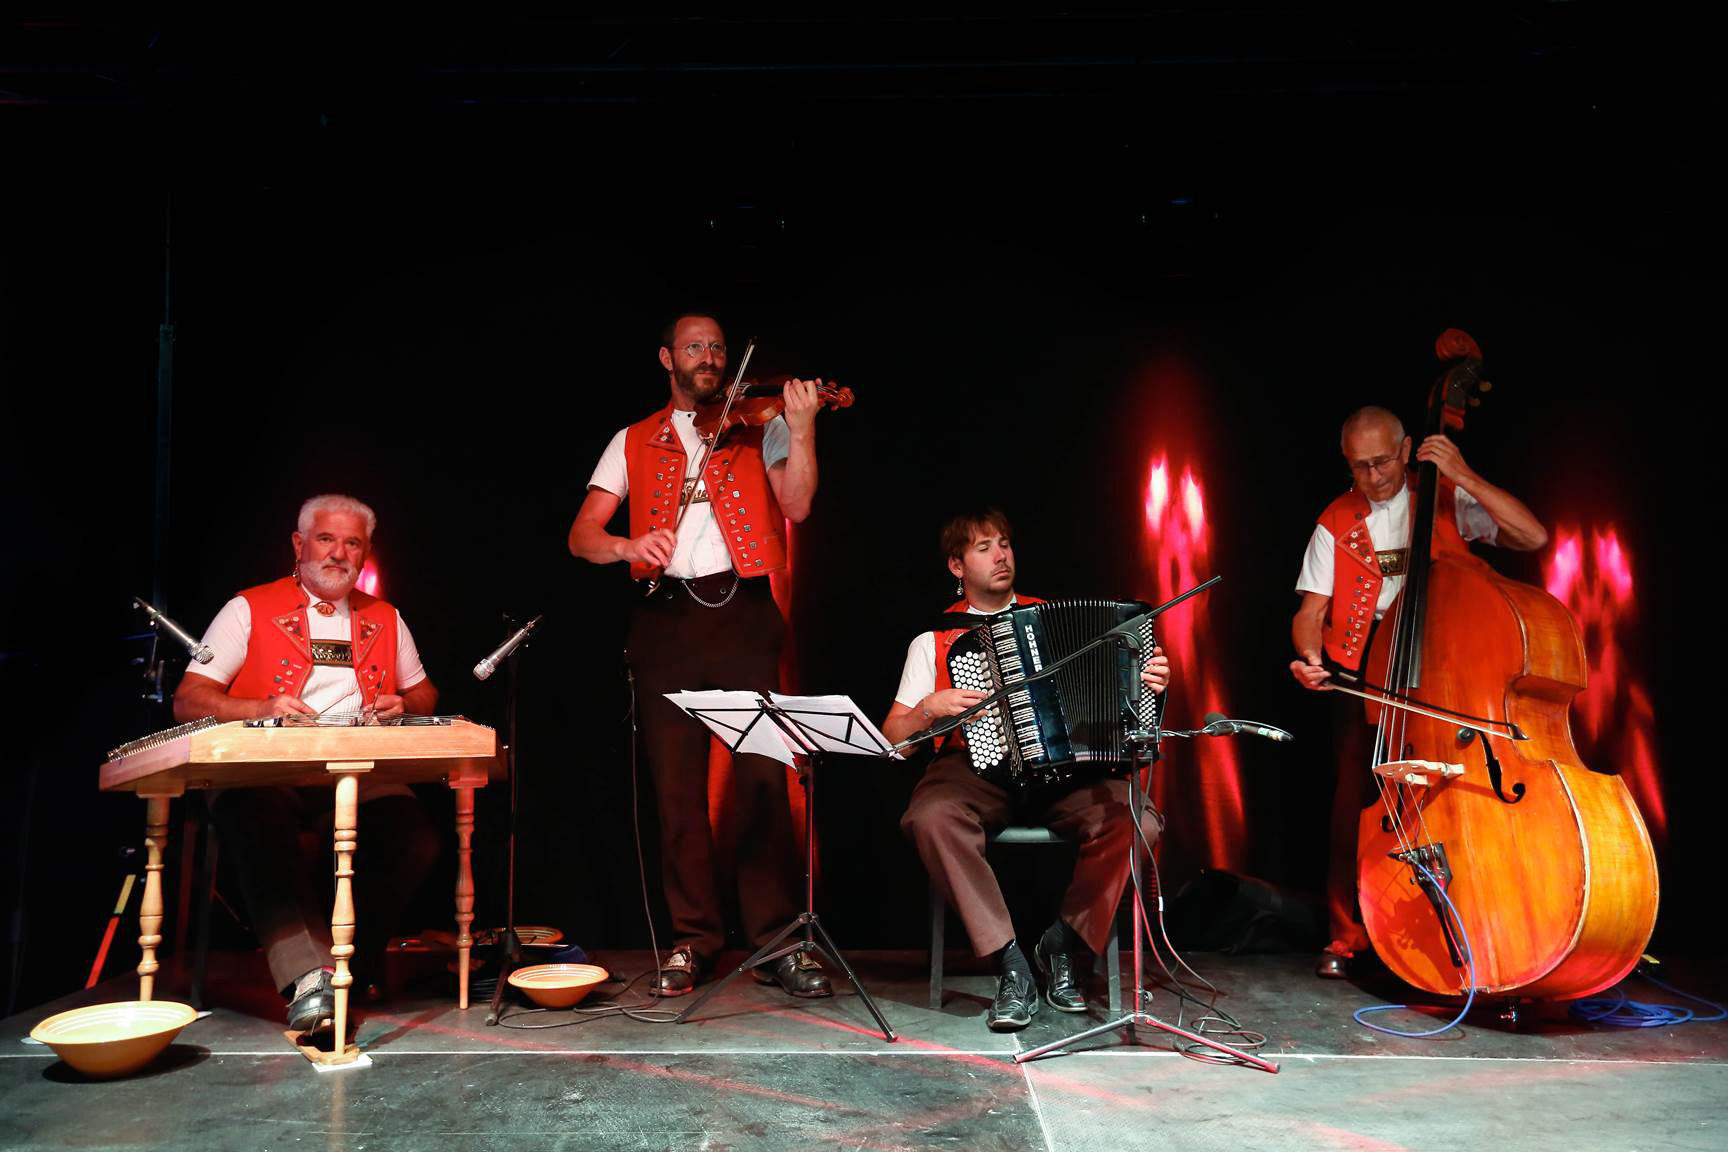 Cuarteto de música floclórica suiza vestido en rojo y blanco